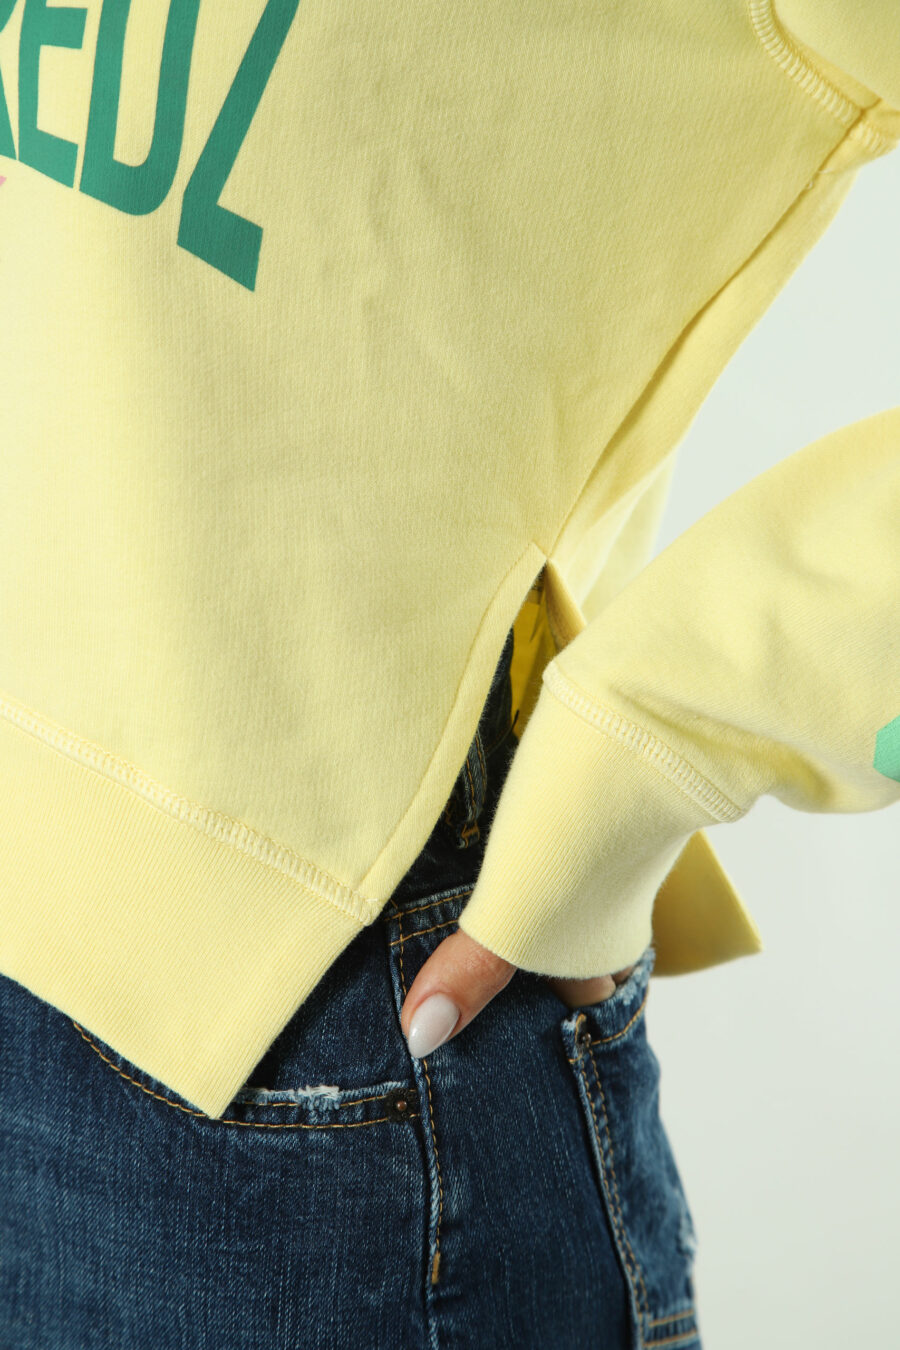 Gelbes Sweatshirt mit grünem Maxilogo und Text auf den Ärmeln - 8052134554463 3